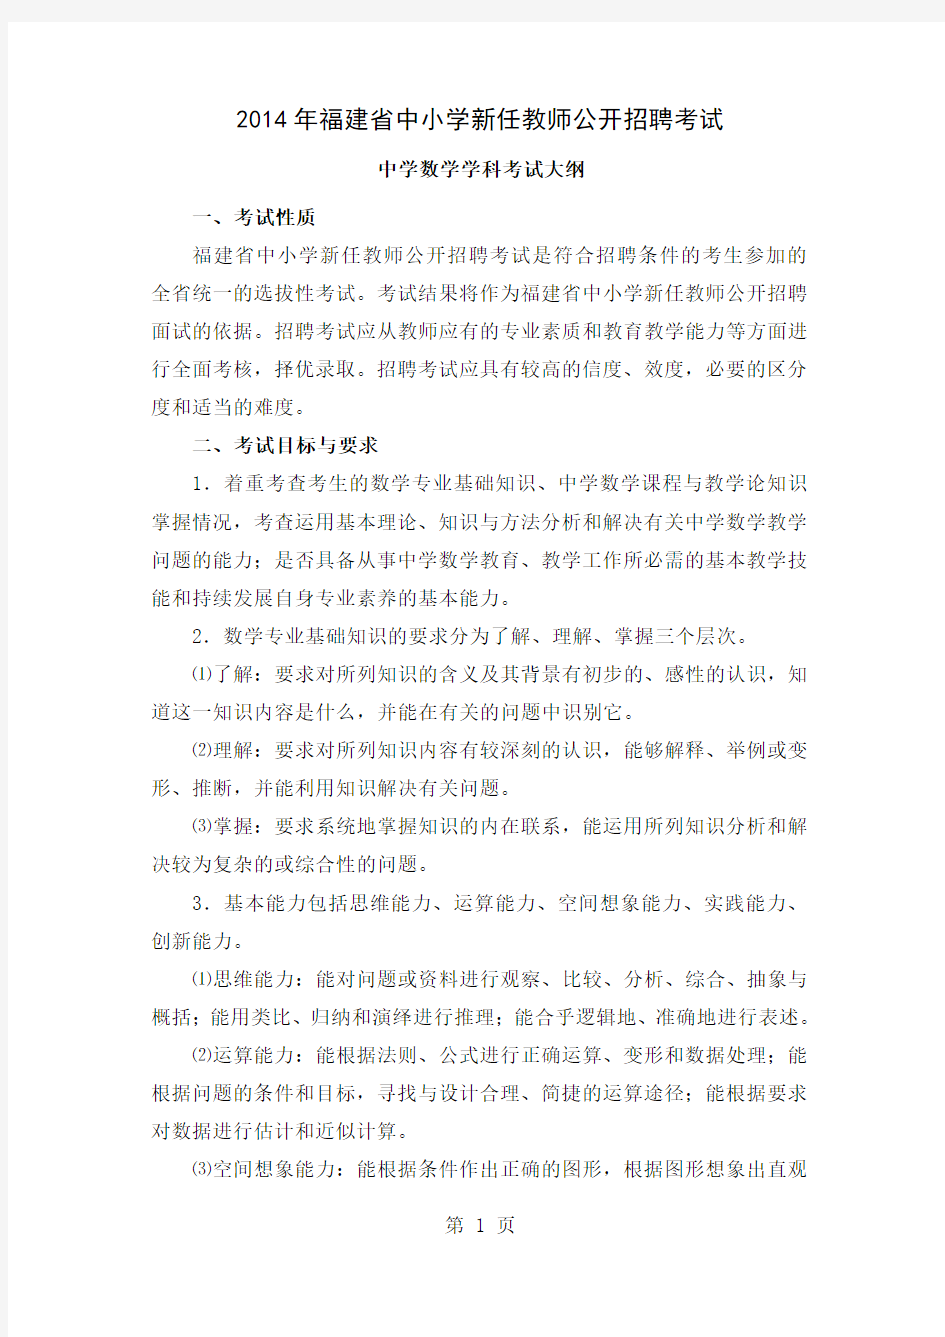 2019年福建省教师招聘考试中学数学考试大纲共9页文档